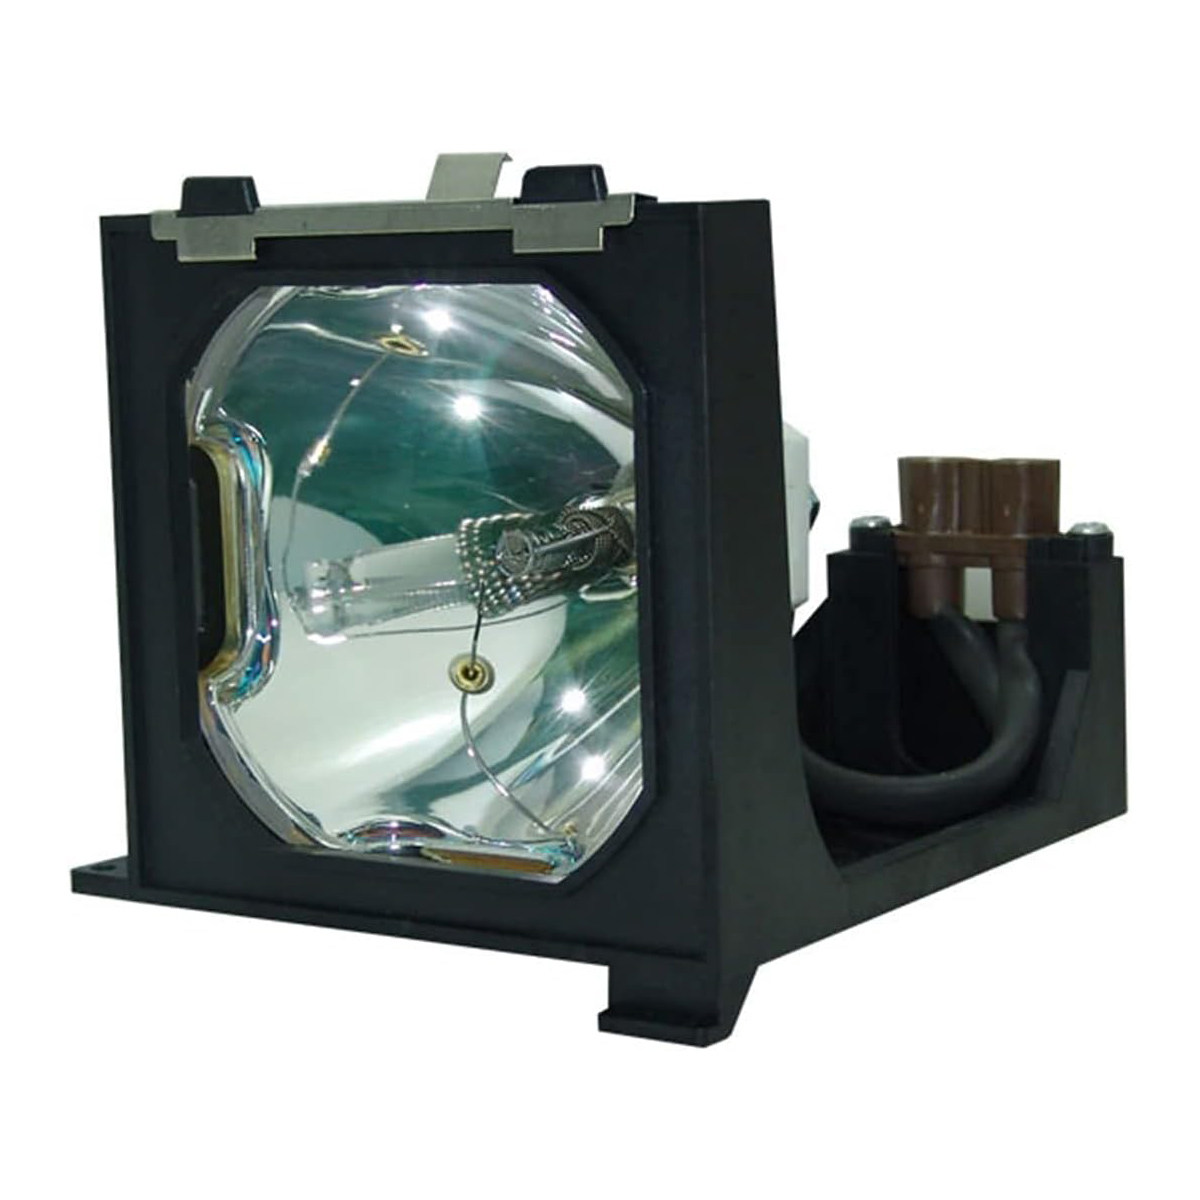 Replacement Projector lamp POA-LMP68 For Sanyo PLC-3600 PLC-SC10 PLC-SU60 PLC-XC10